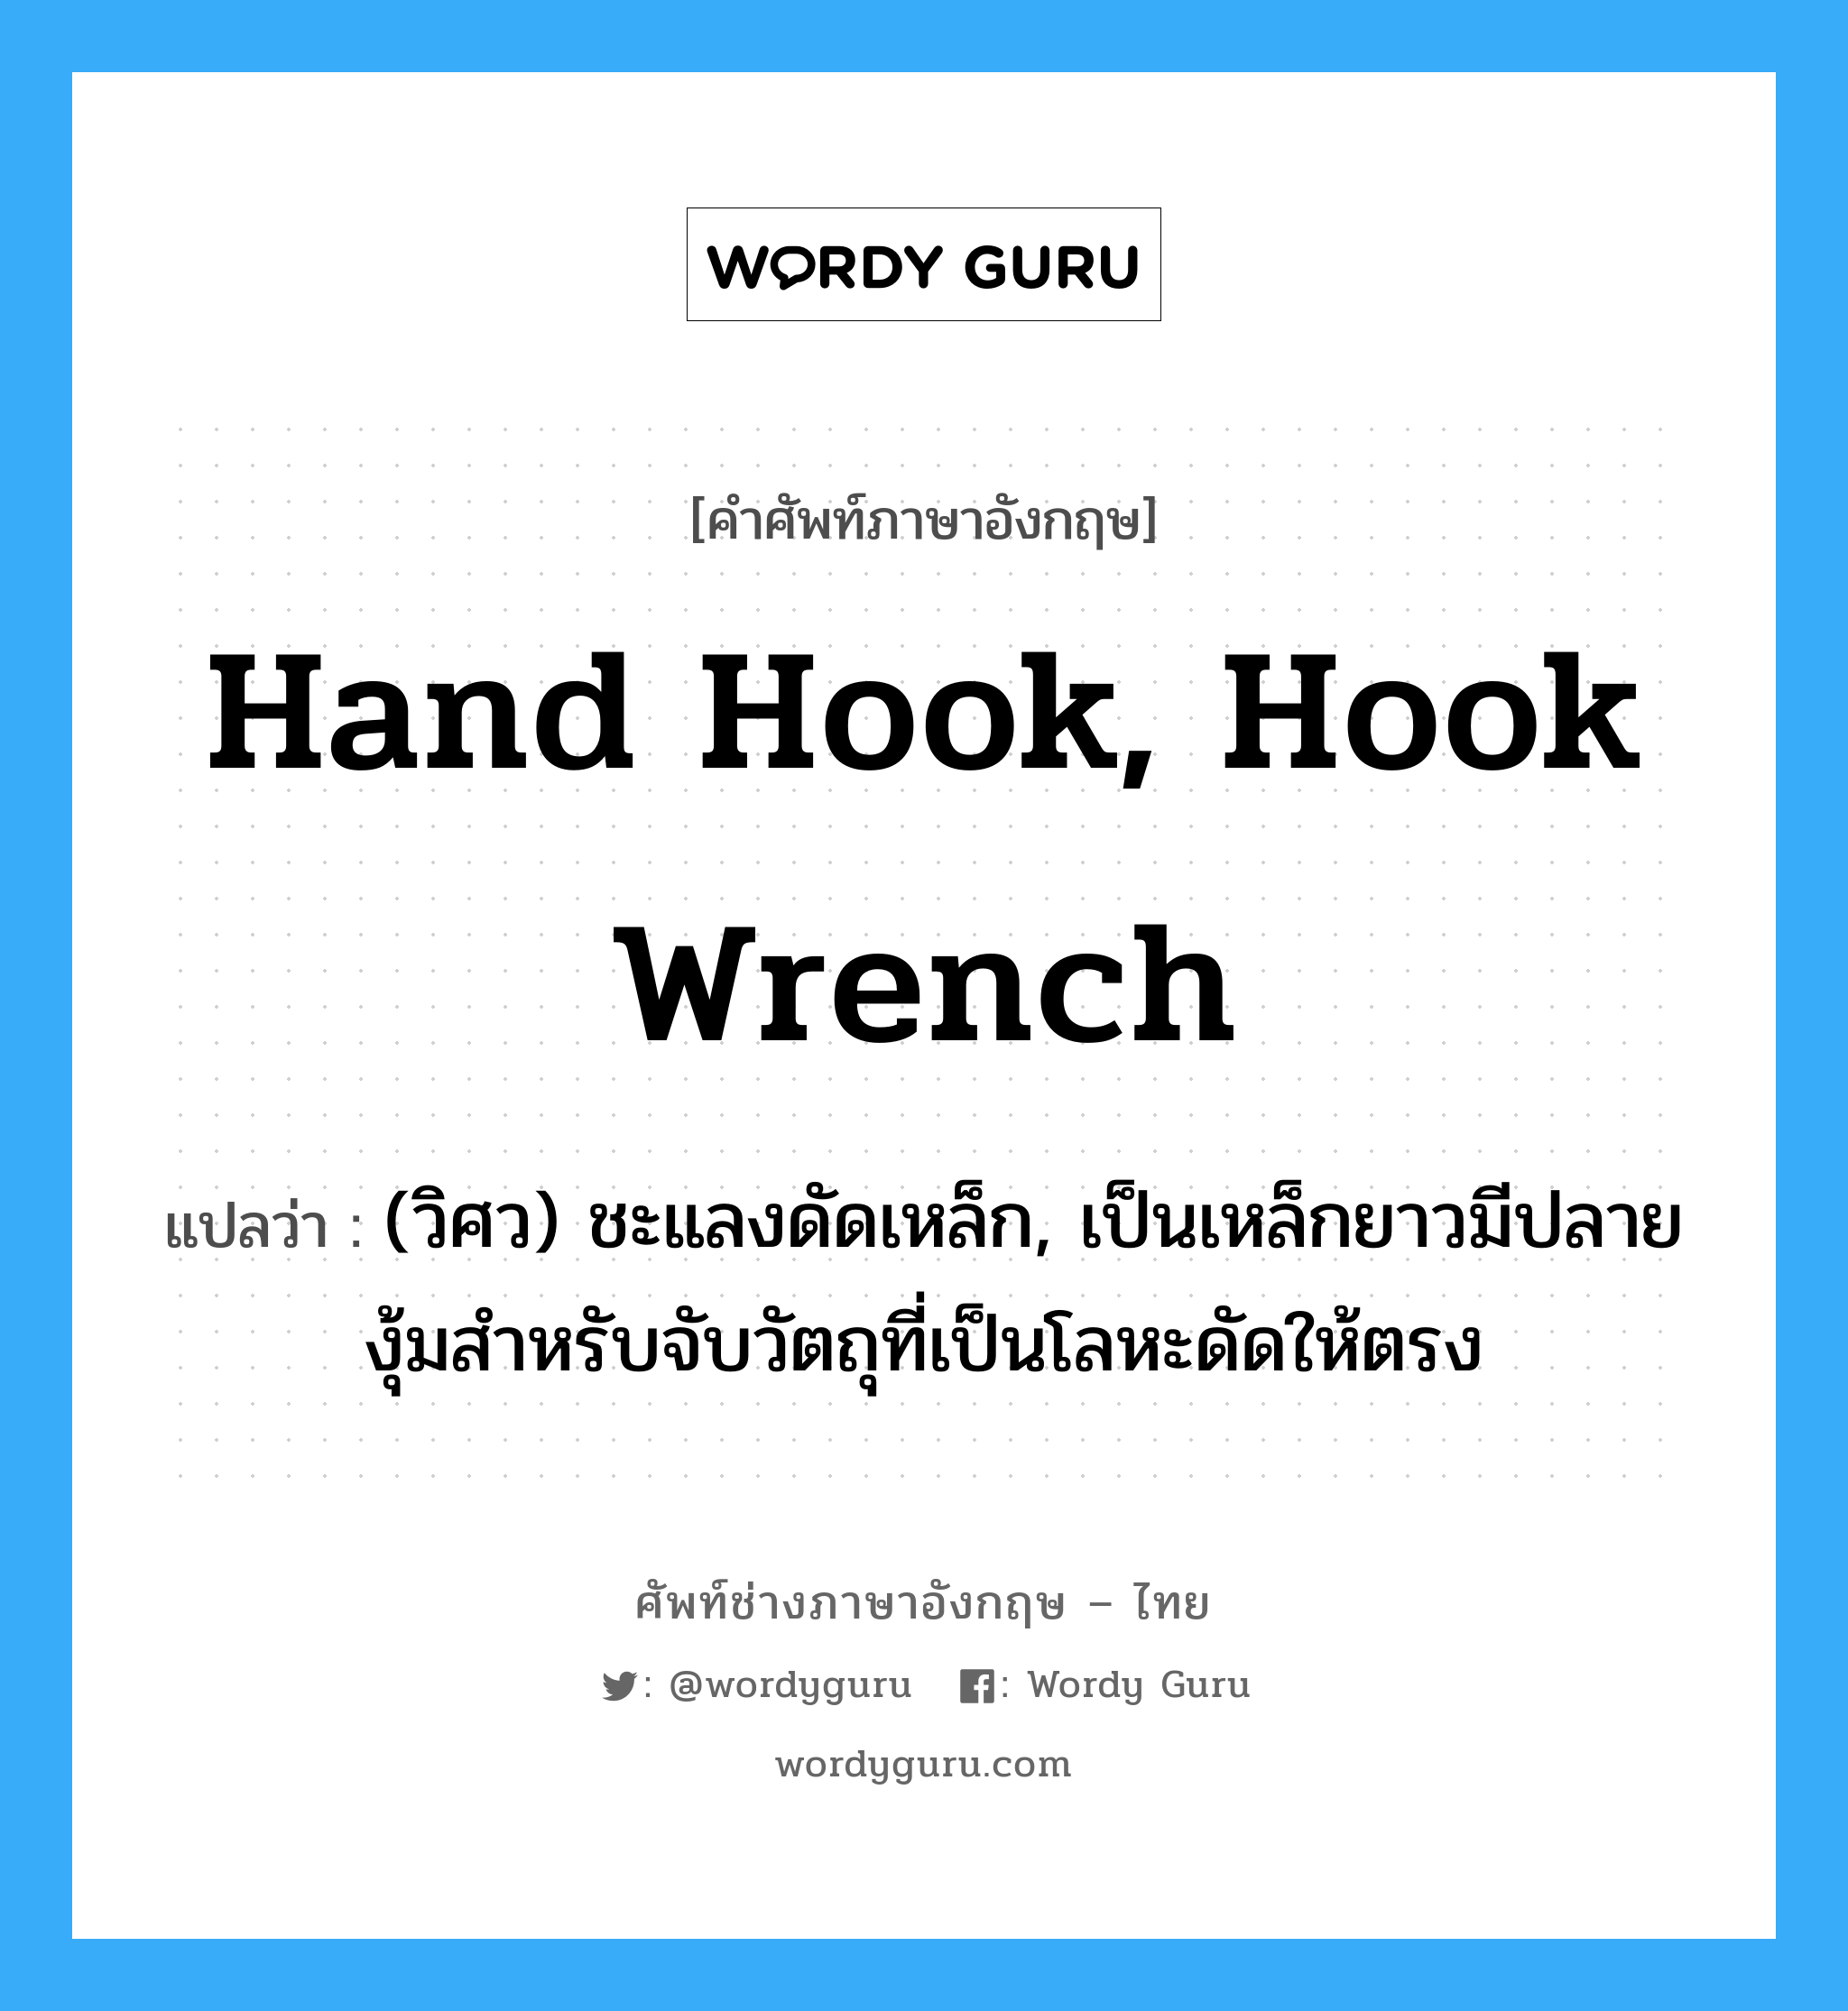 hand hook, hook wrench แปลว่า?, คำศัพท์ช่างภาษาอังกฤษ - ไทย hand hook, hook wrench คำศัพท์ภาษาอังกฤษ hand hook, hook wrench แปลว่า (วิศว) ชะแลงดัดเหล็ก, เป็นเหล็กยาวมีปลายงุ้มสำหรับจับวัตถุที่เป็นโลหะดัดให้ตรง